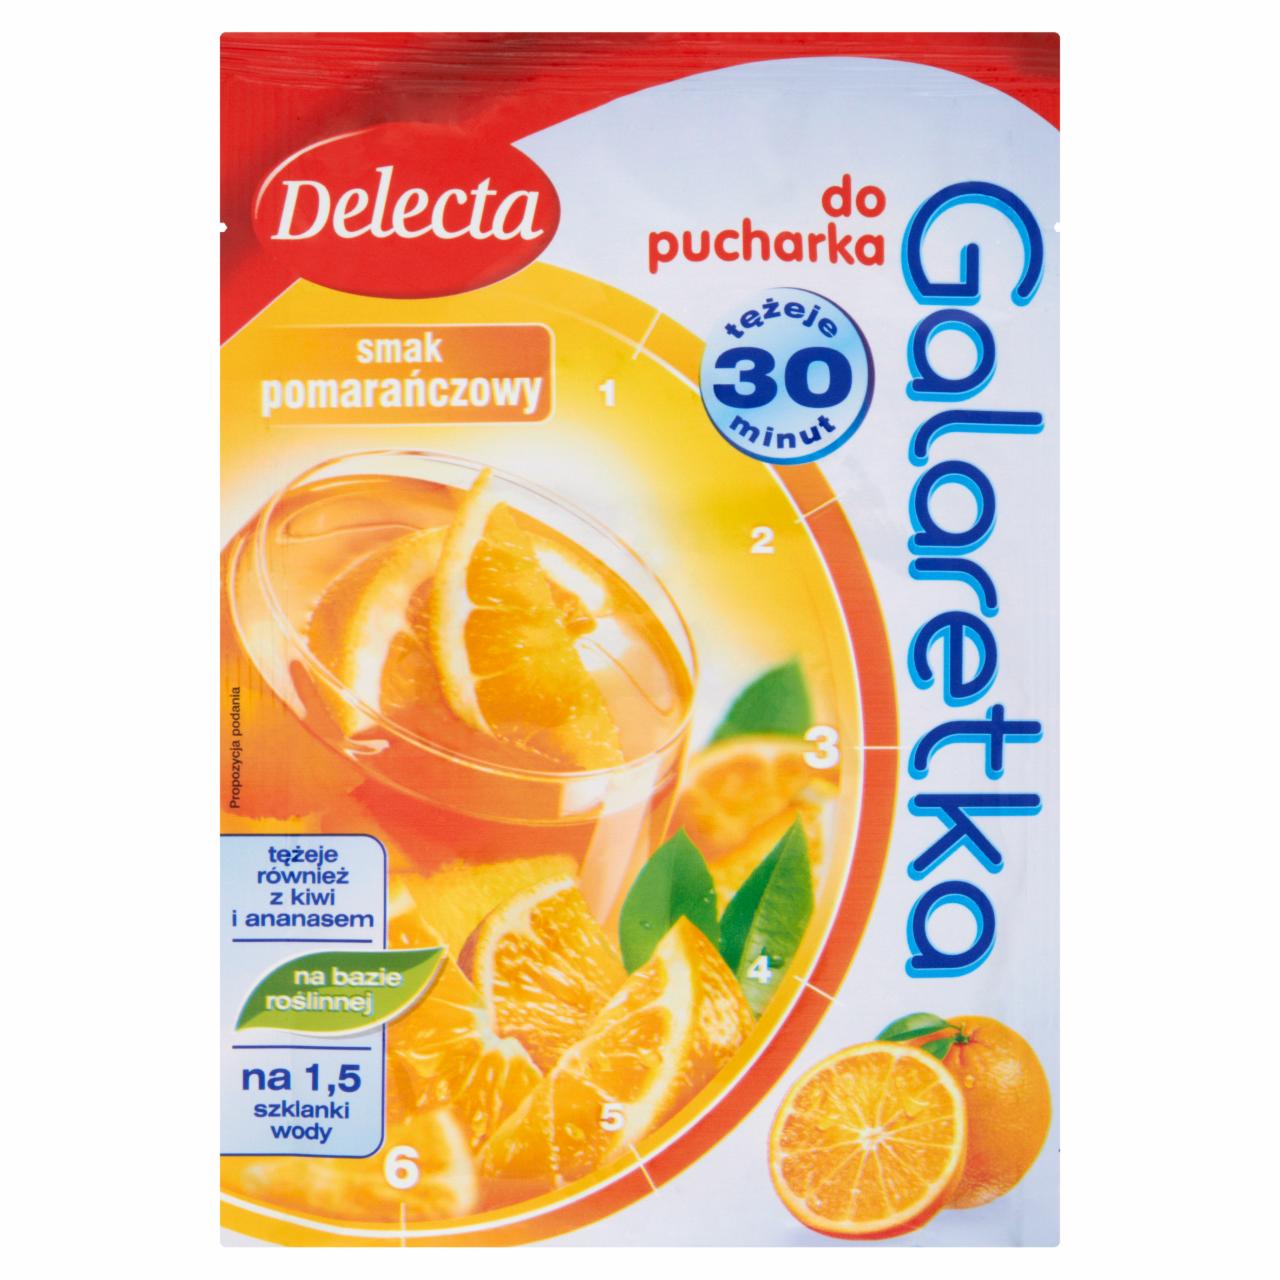 Zdjęcia - Delecta Galaretka do pucharka smak pomarańczowy 60 g